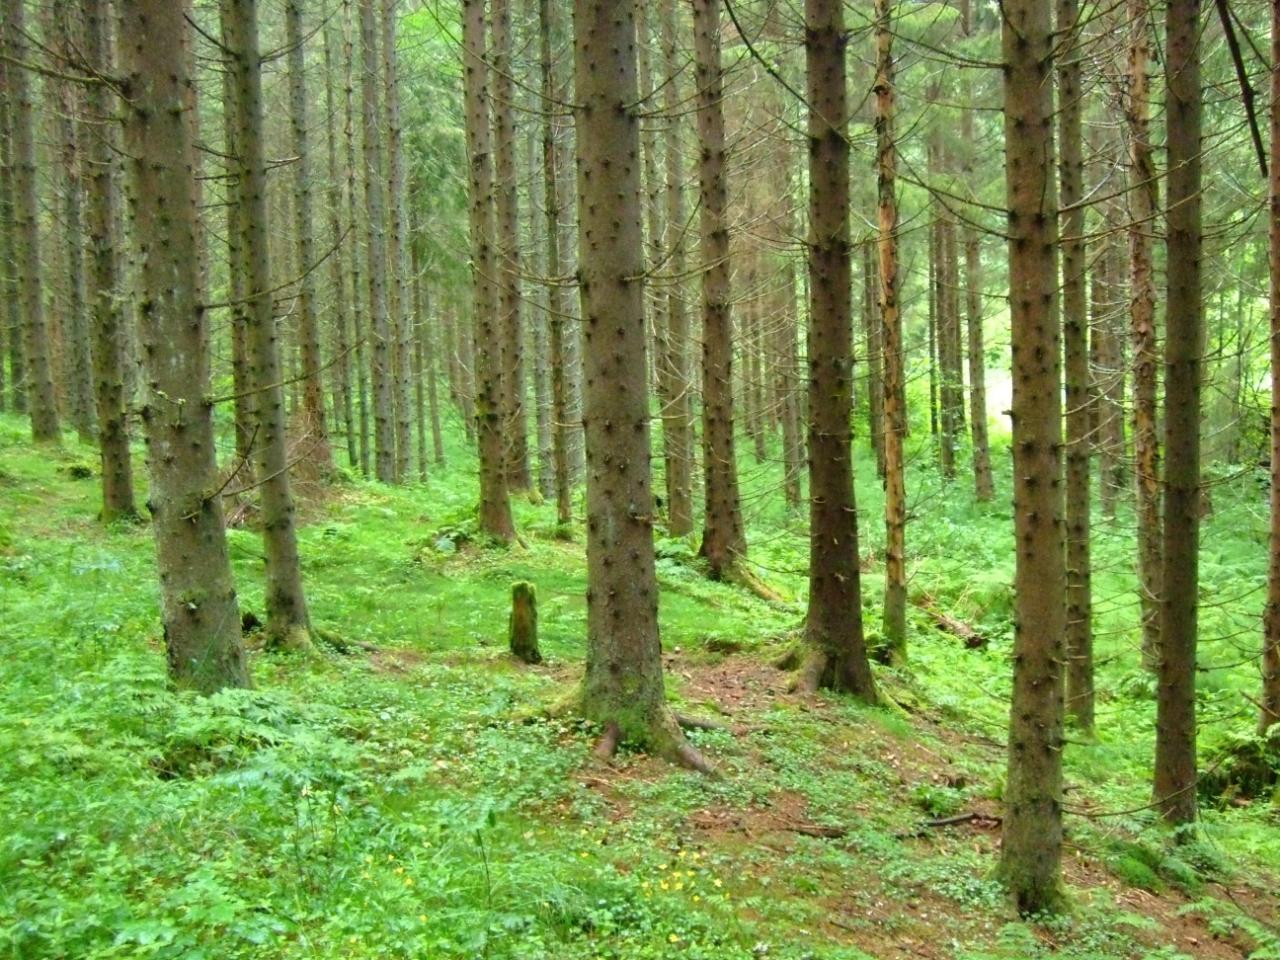 I eldre kulturskog er trærne flere og likere i størrelse enn i gammel naturskog.